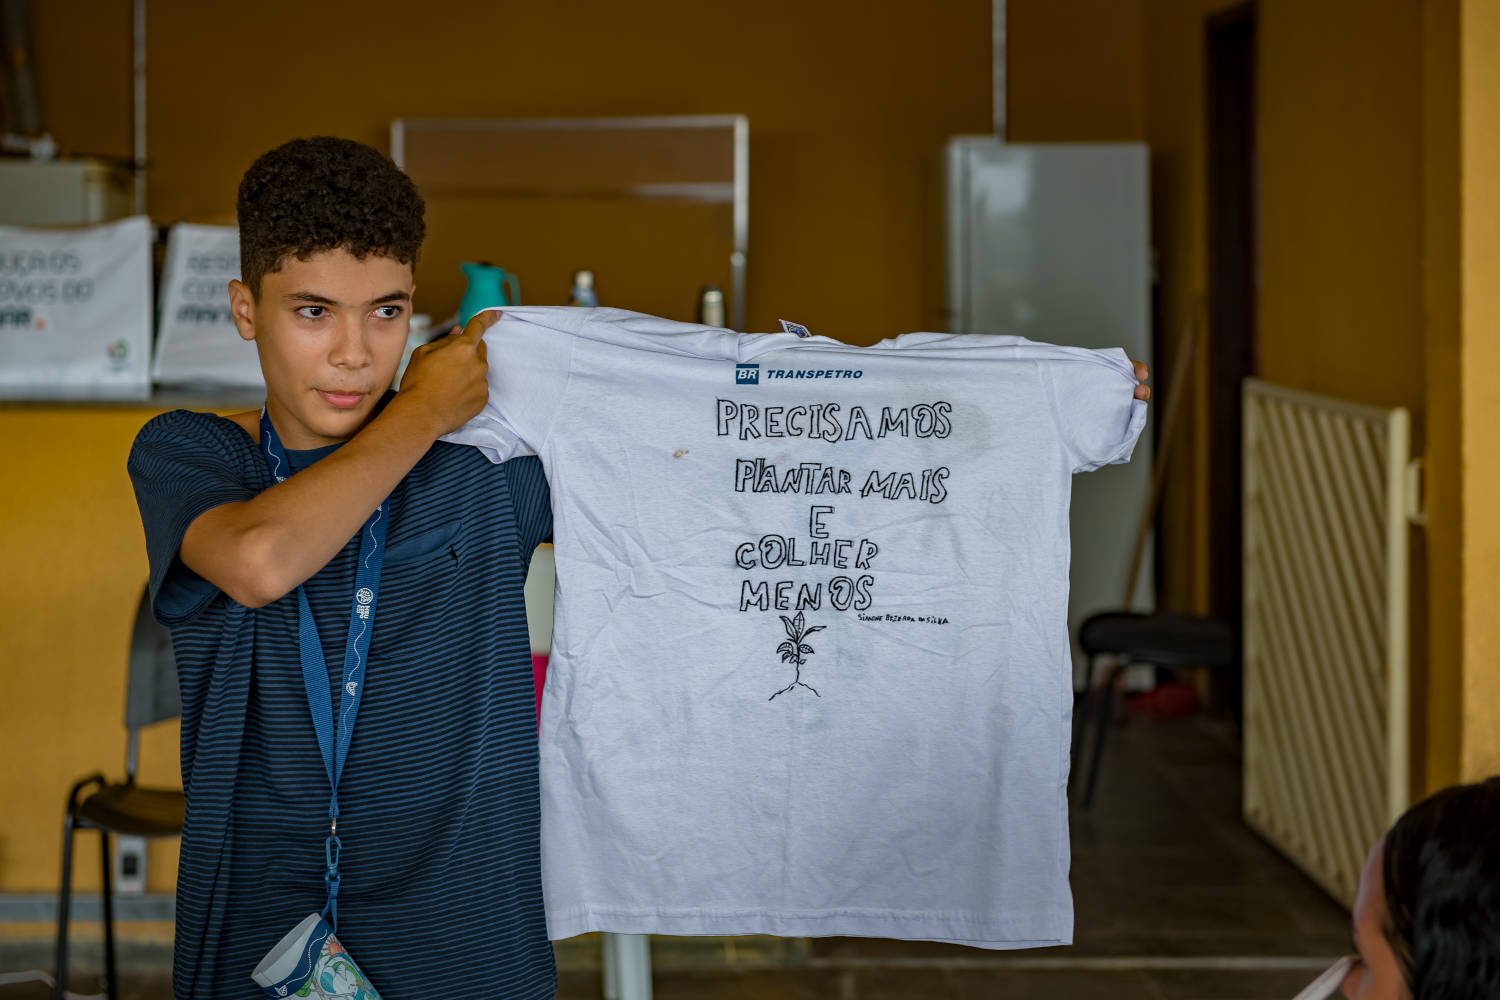 Jovens se mobilizam para mudar realidade socioambiental em Itaguaí